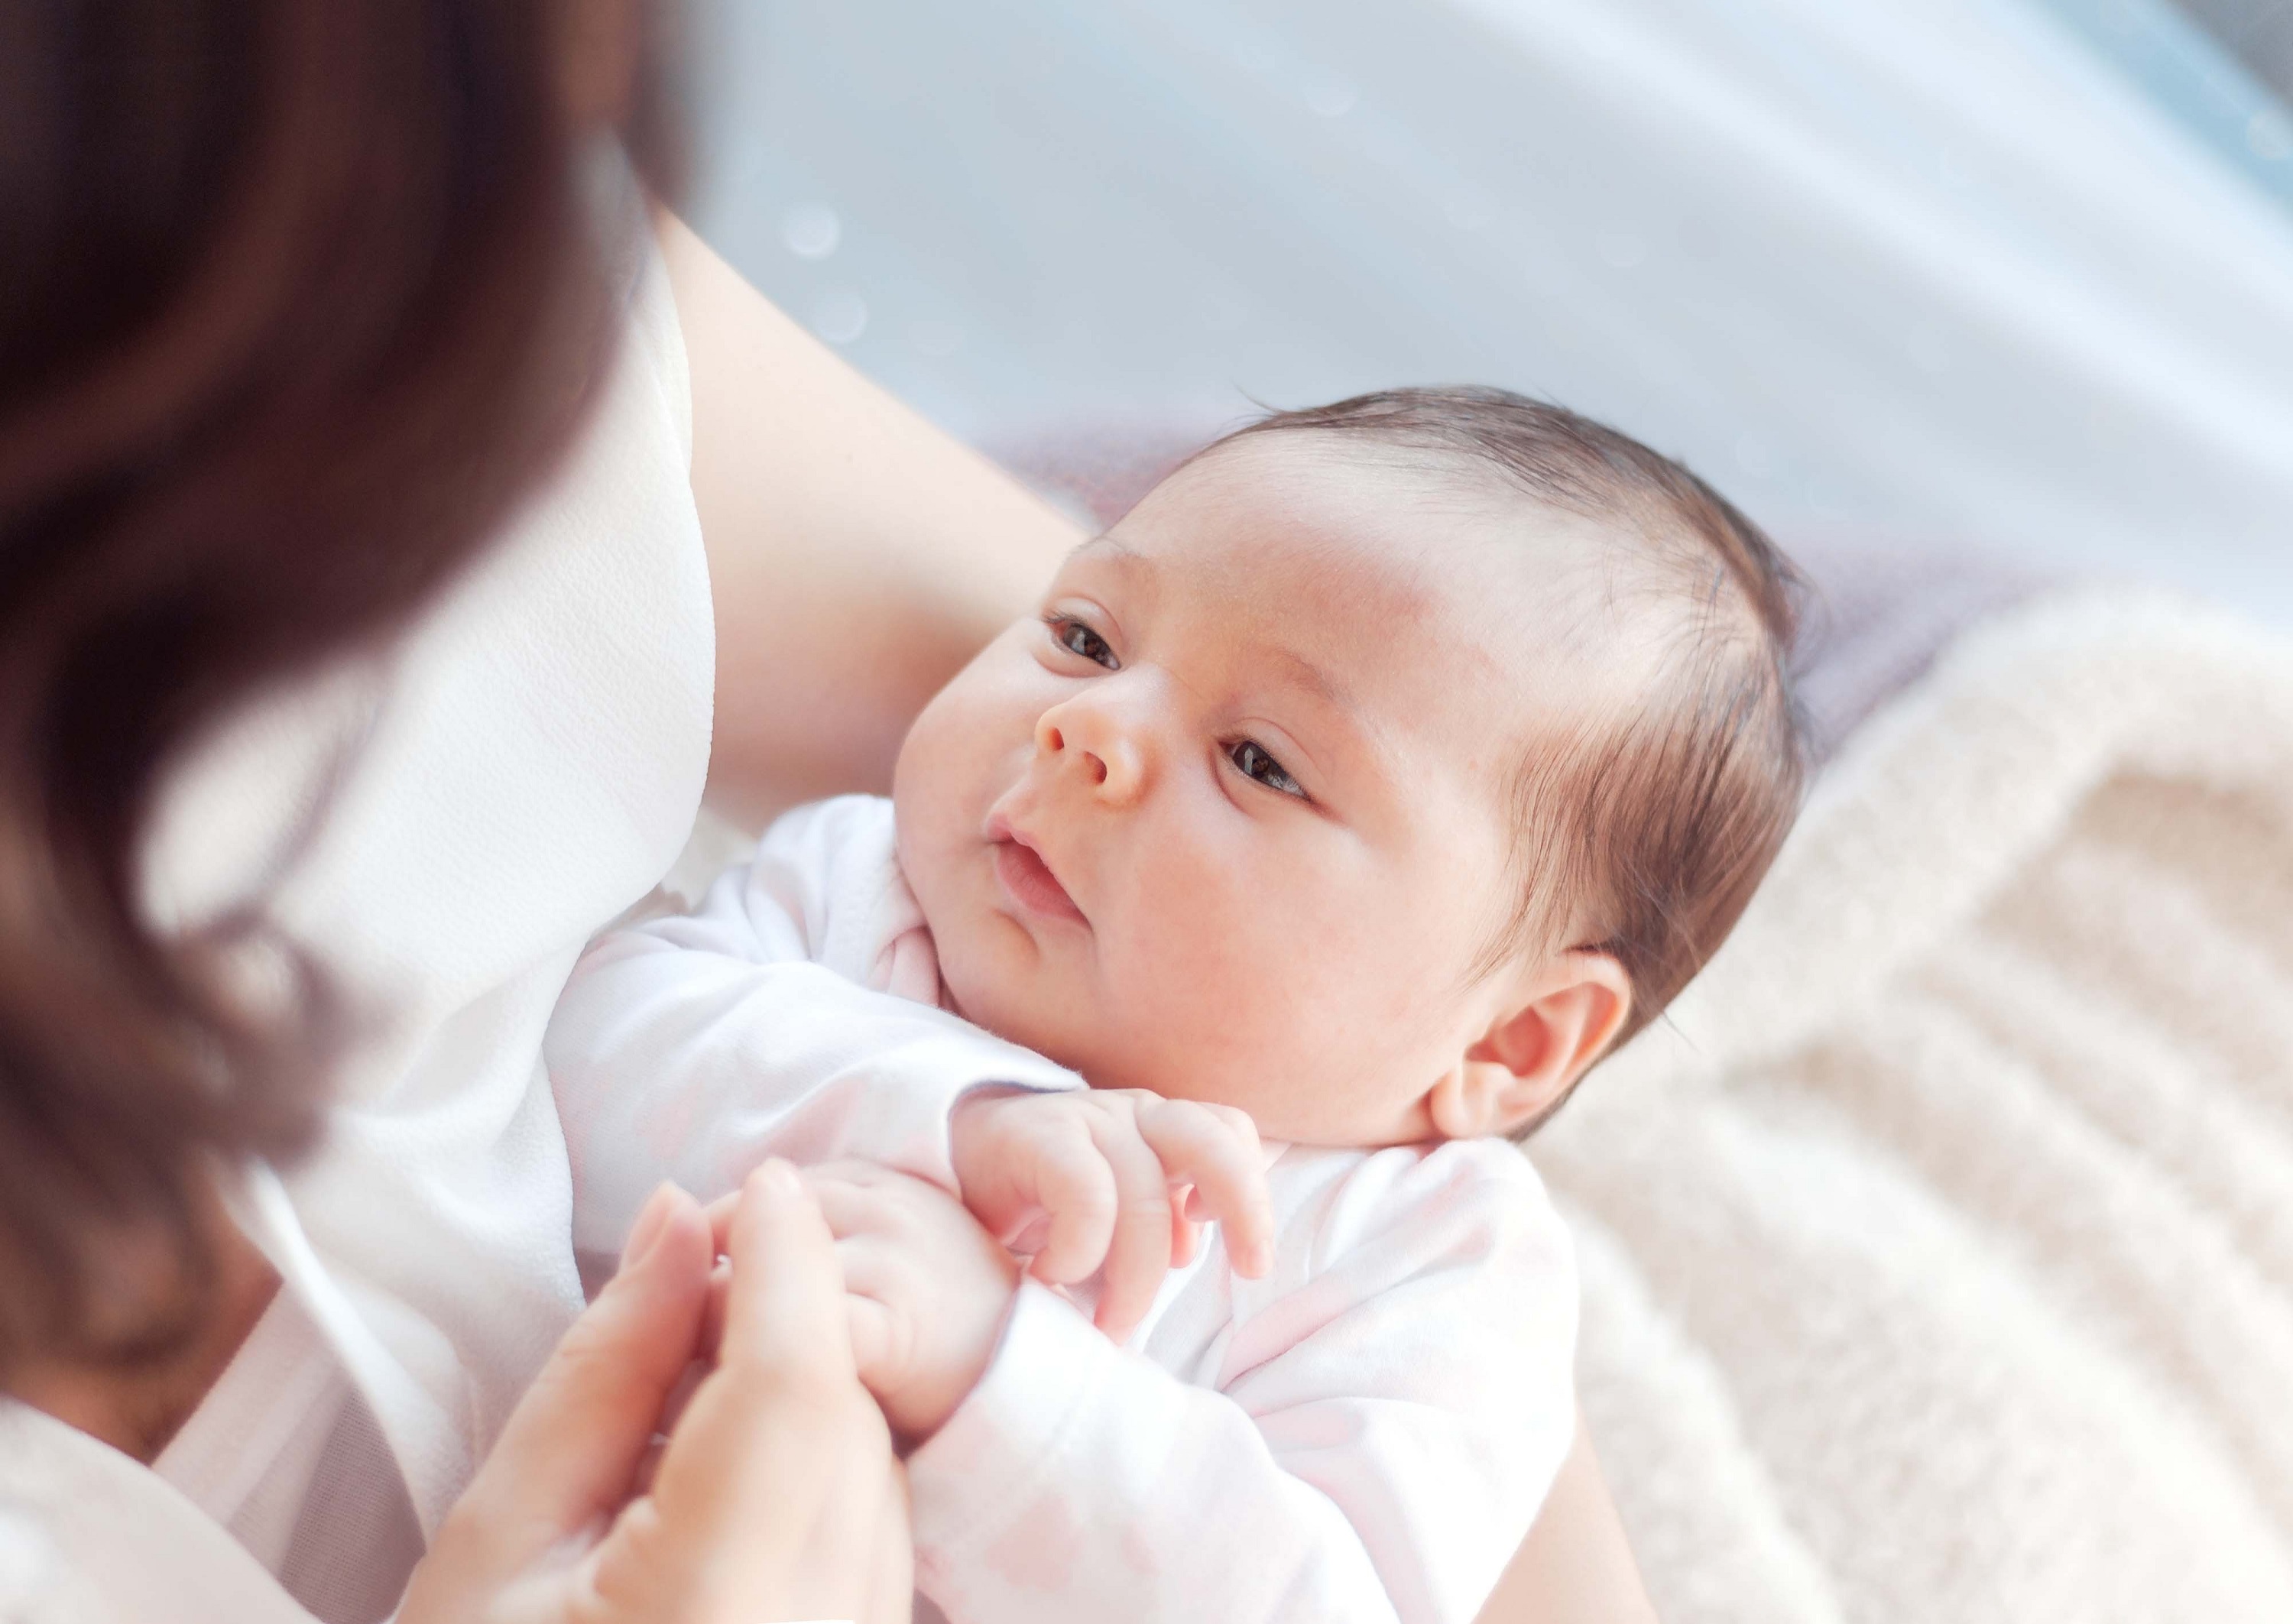 Emzirmek bebeğin özgüvenini arttırıyor